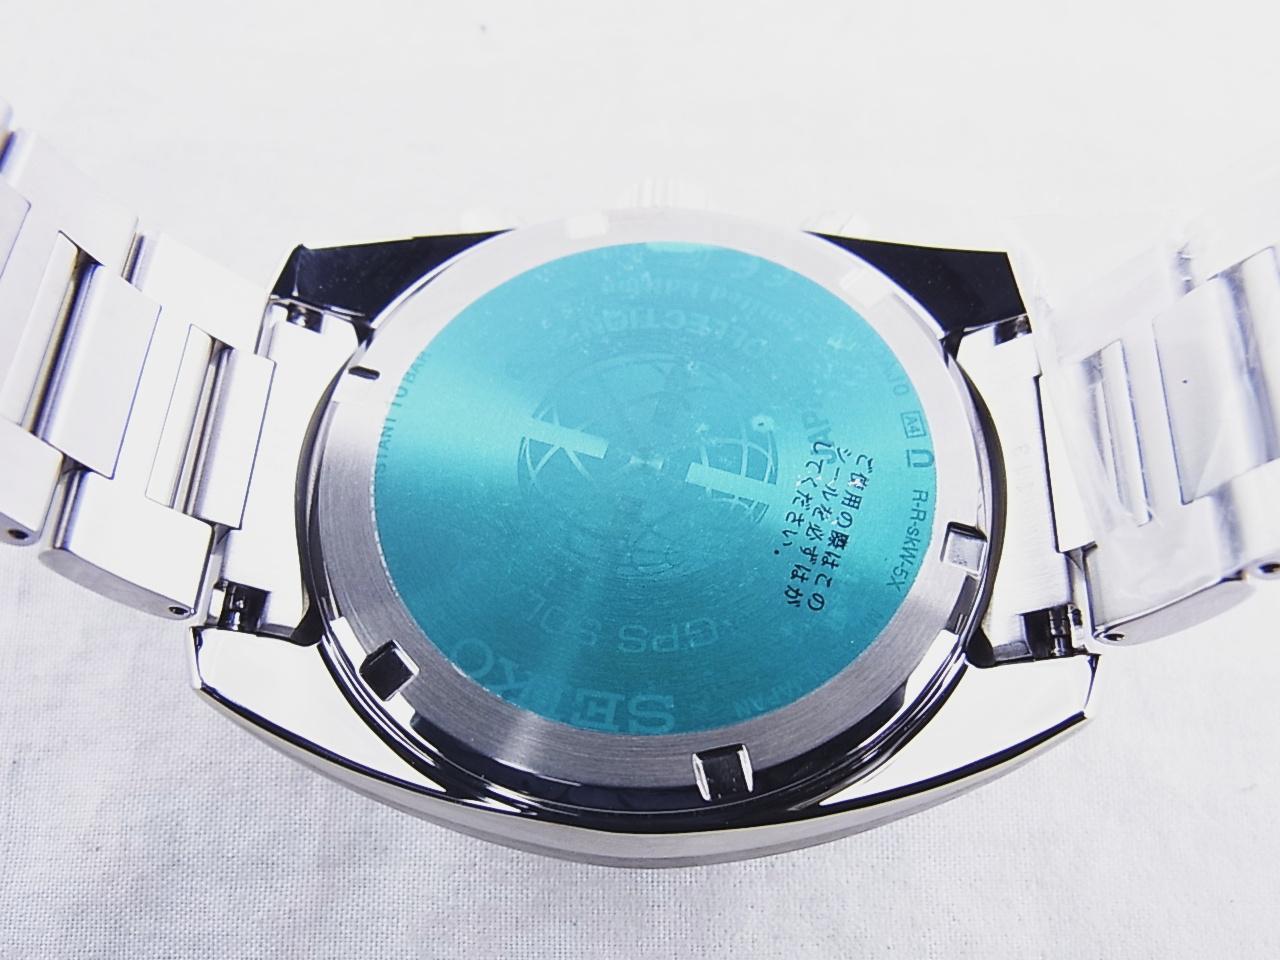 SEIKO セイコー メンズ腕時計 アストロン デュアルタイム ソーラー電波時計 SBVC055 ブルー文字盤 JAPAN COLLECTION 2020 Limited Edition 未使用品